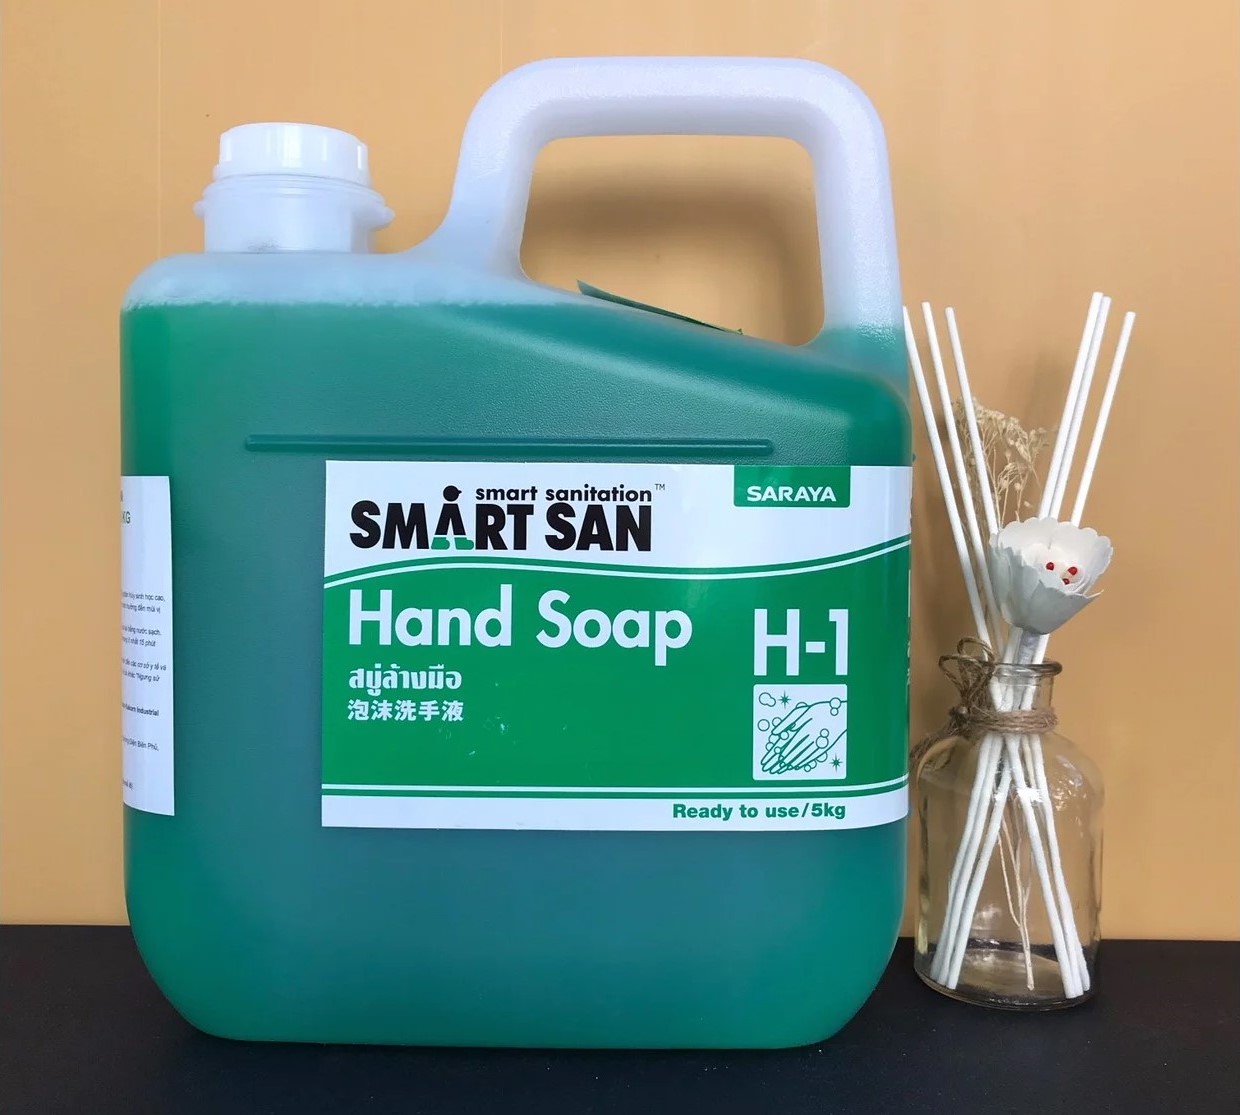 Dung dịch xà phòng rửa tay sát khuẩn SmartSan Hand Soap H1